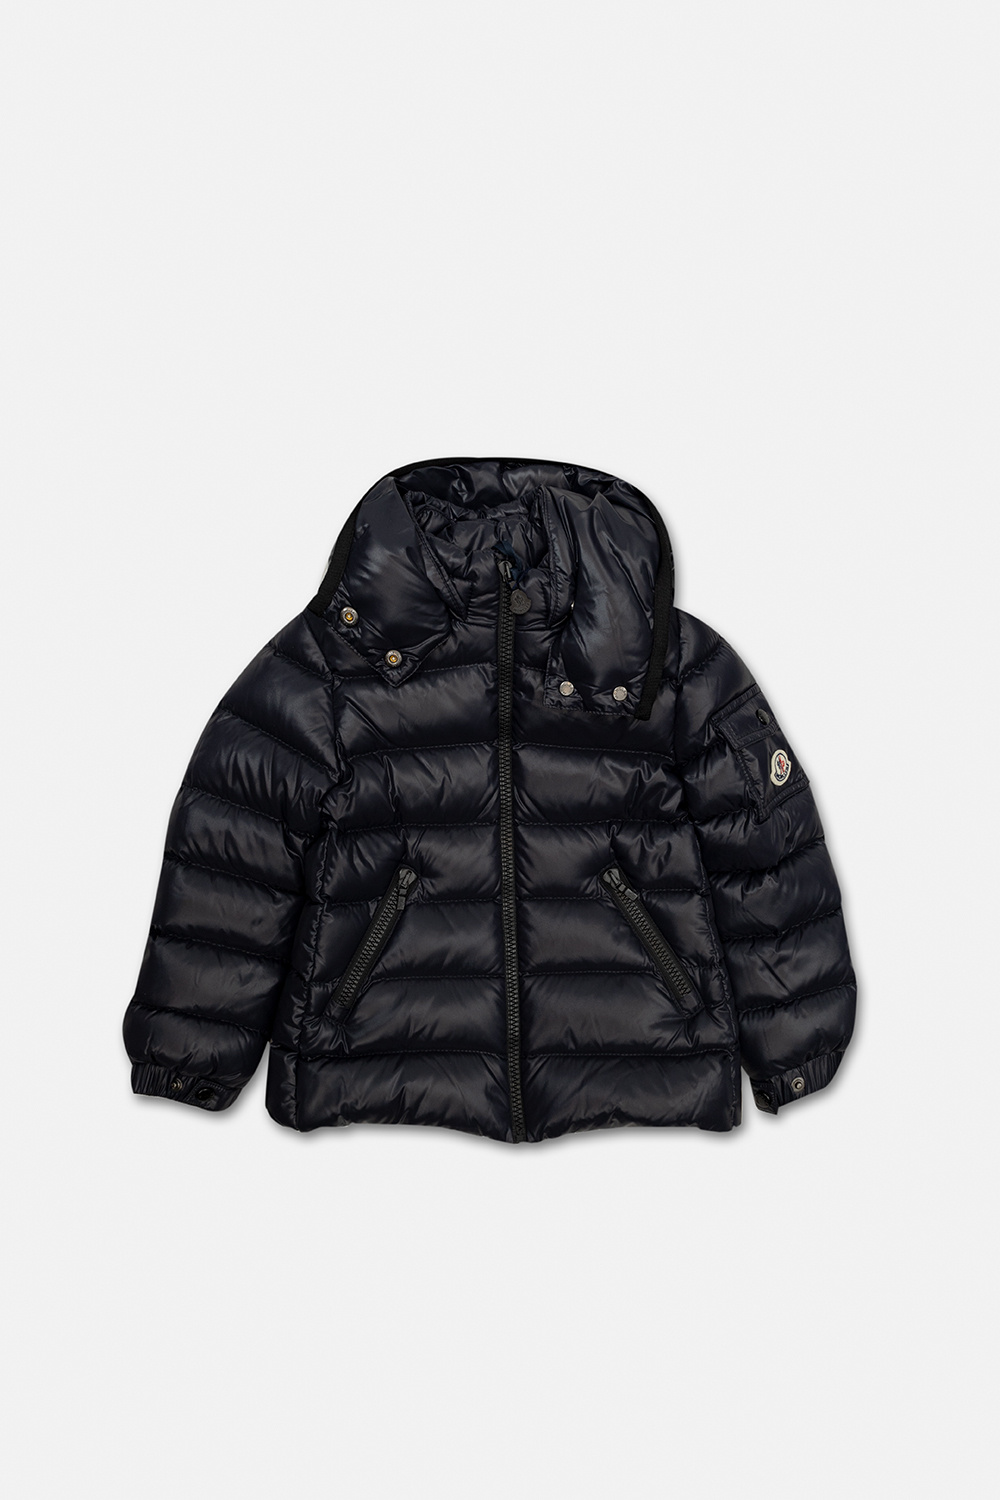 Moncler Enfant ‘Bady’ down jacket